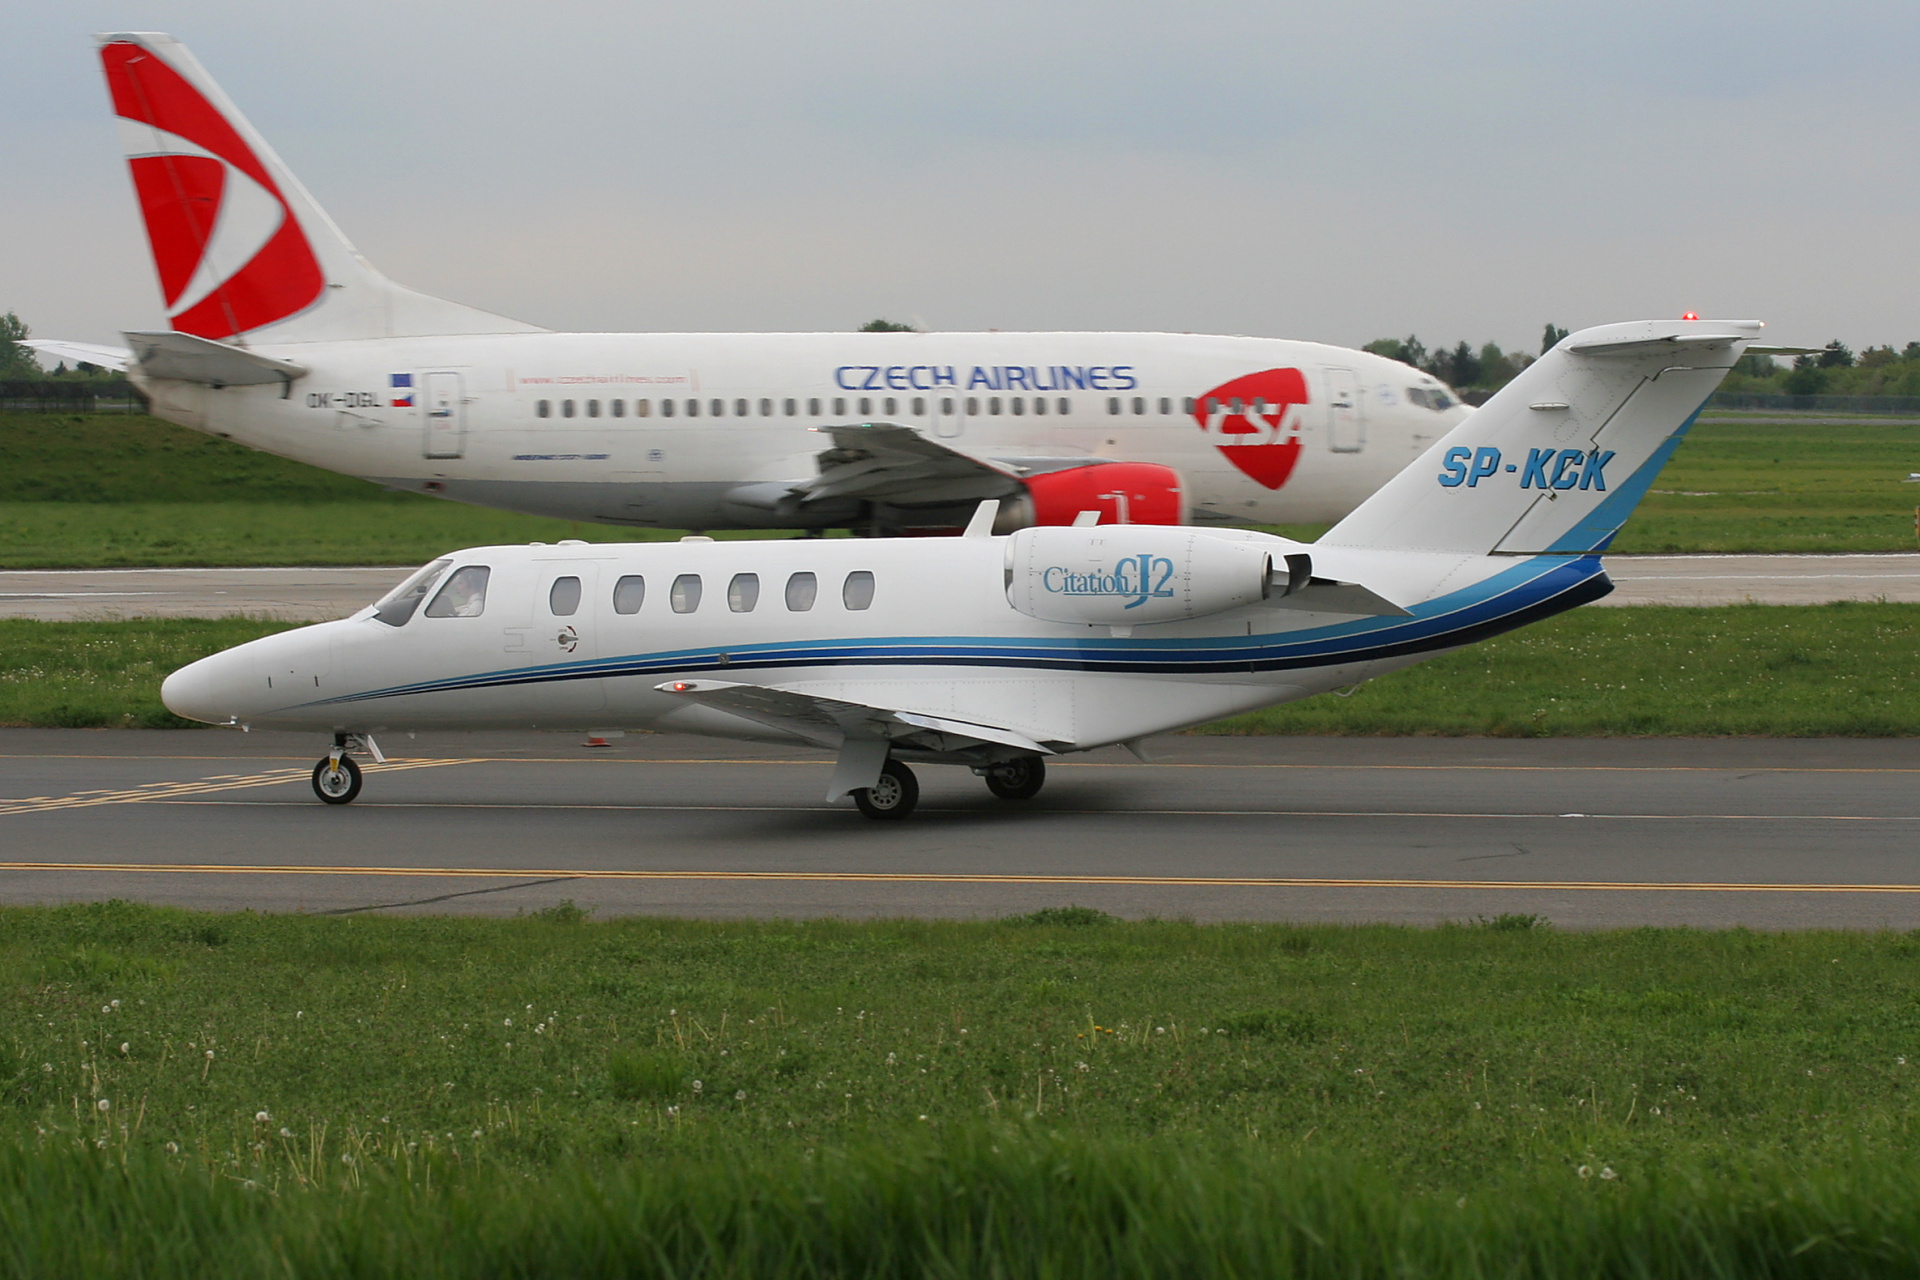 SP-KCK, Jet Service (Aircraft » EPWA Spotting » Cessna 525 (CitationJet) and revisions » 525A Citation CJ2 (CitationJet 2))